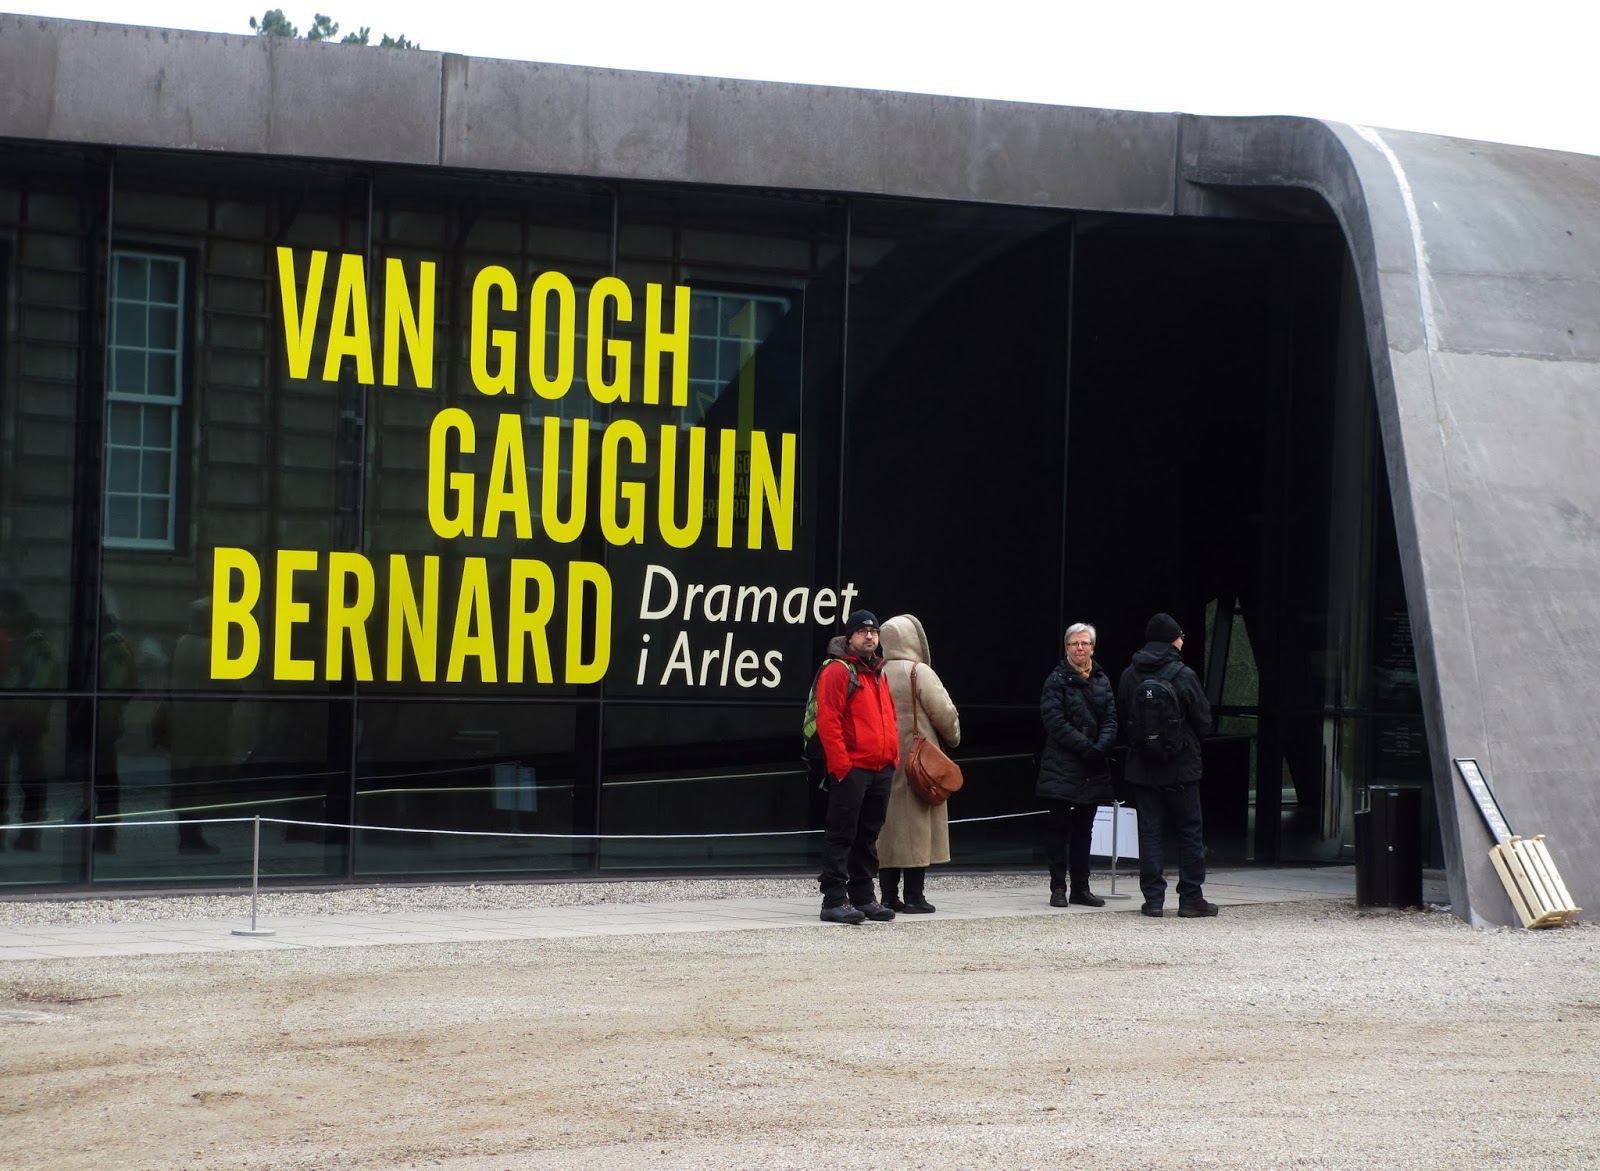 No encalço das obras de VAN GOGH espalhas por em Copenhaga | Dinamarca